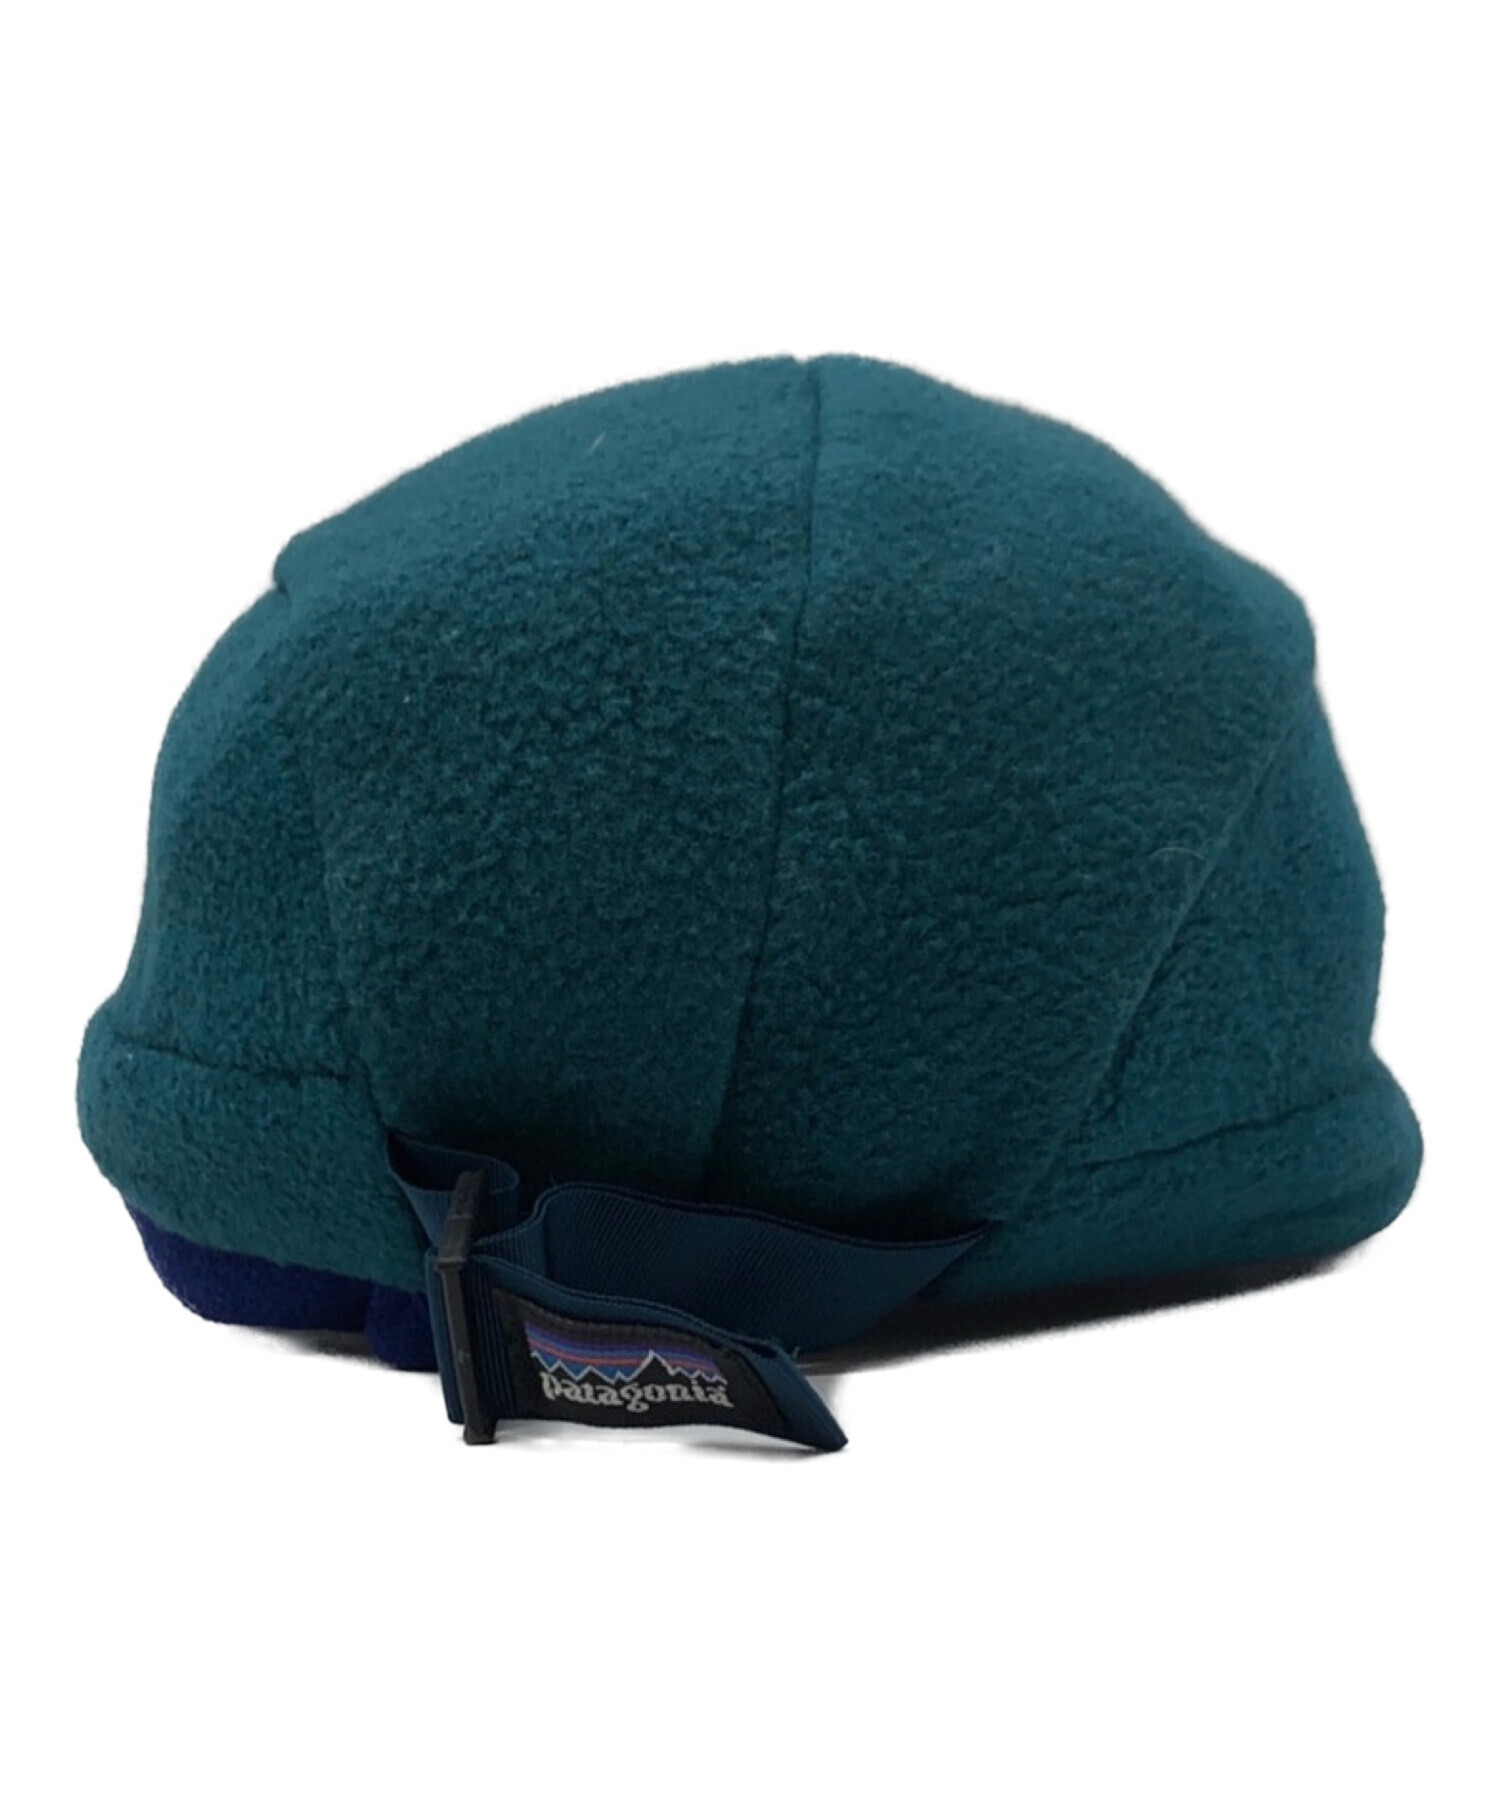 帽子パタゴニア フリース ベレー帽 Patagonia - ハンチング/ベレー帽